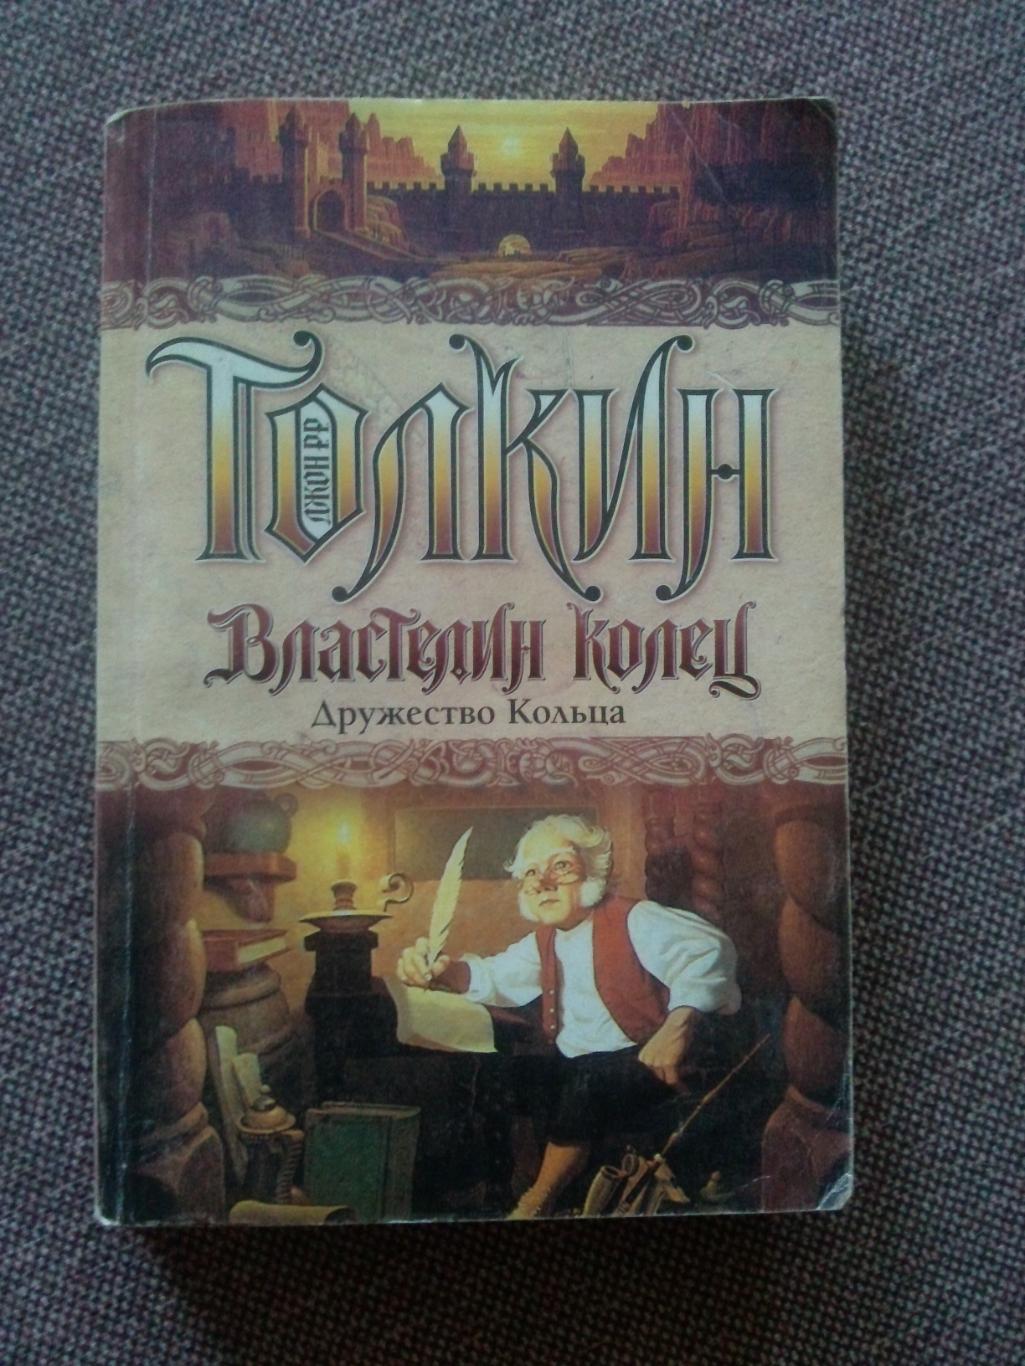 Джон Р.Р. Толкин -Властелин колец - Дружество Кольца2003 г.2 книги в одной